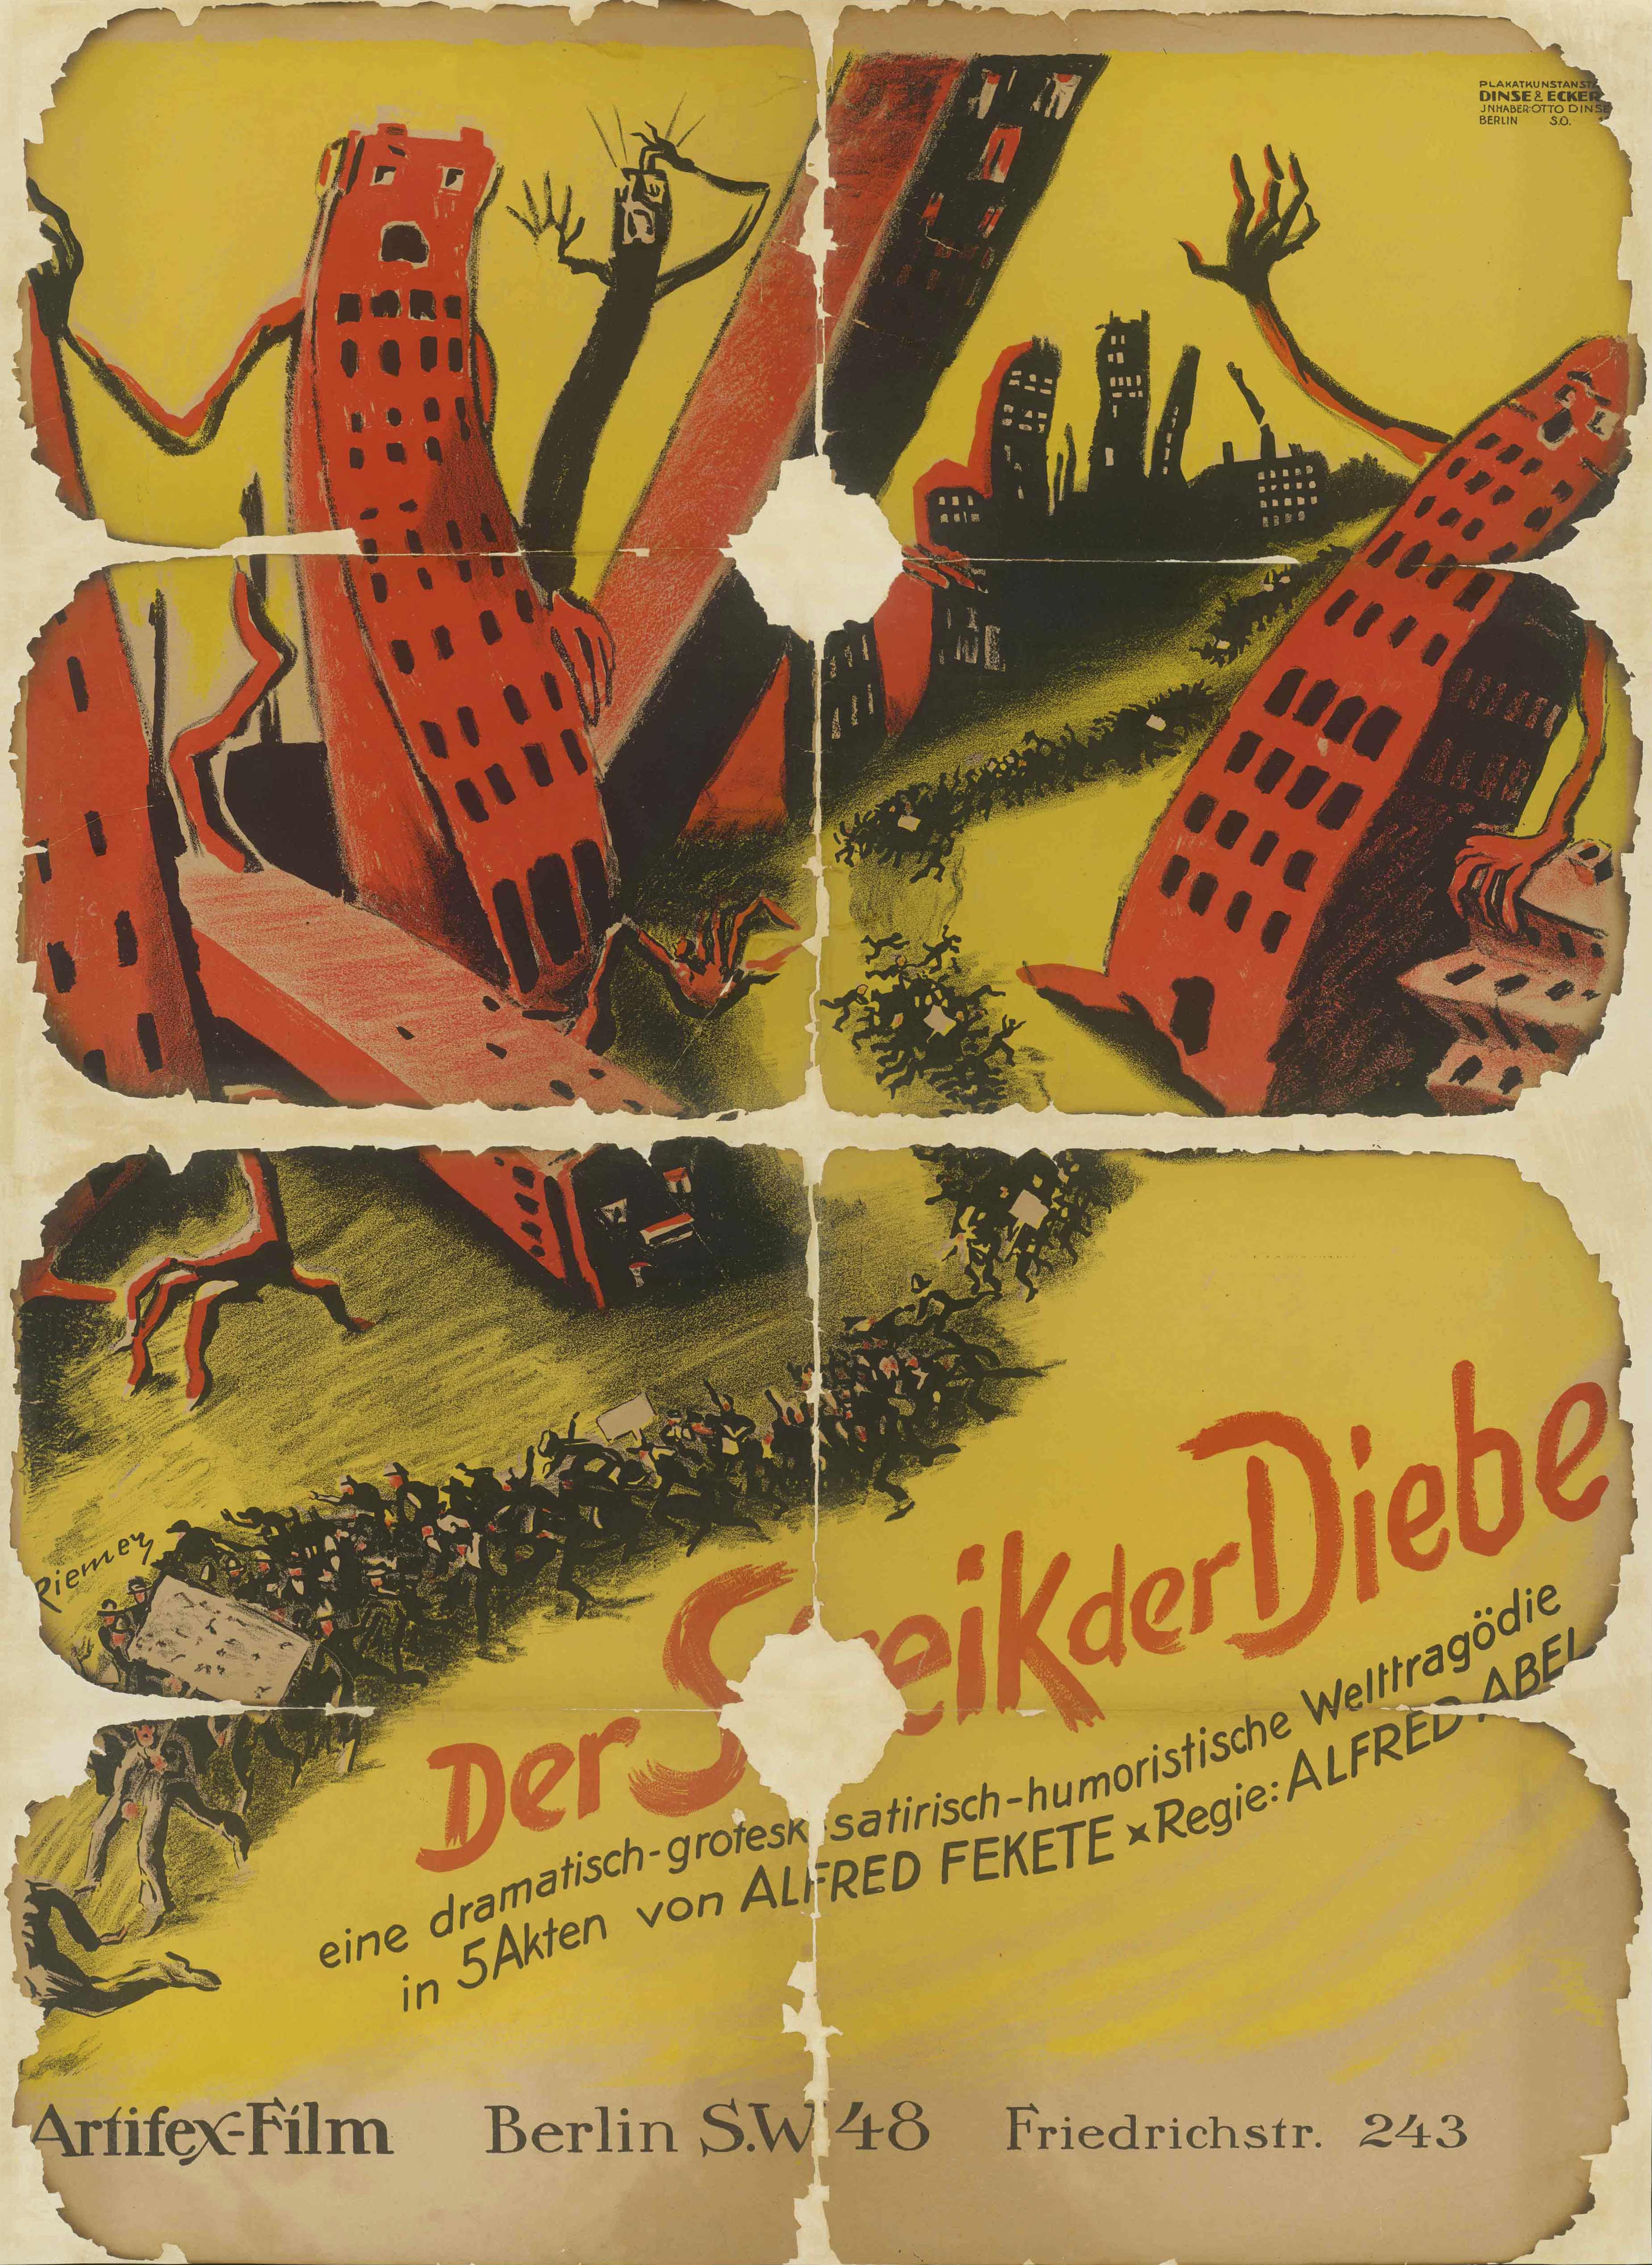 Film poster for Der Streik der Diebe, Germany 1920/21